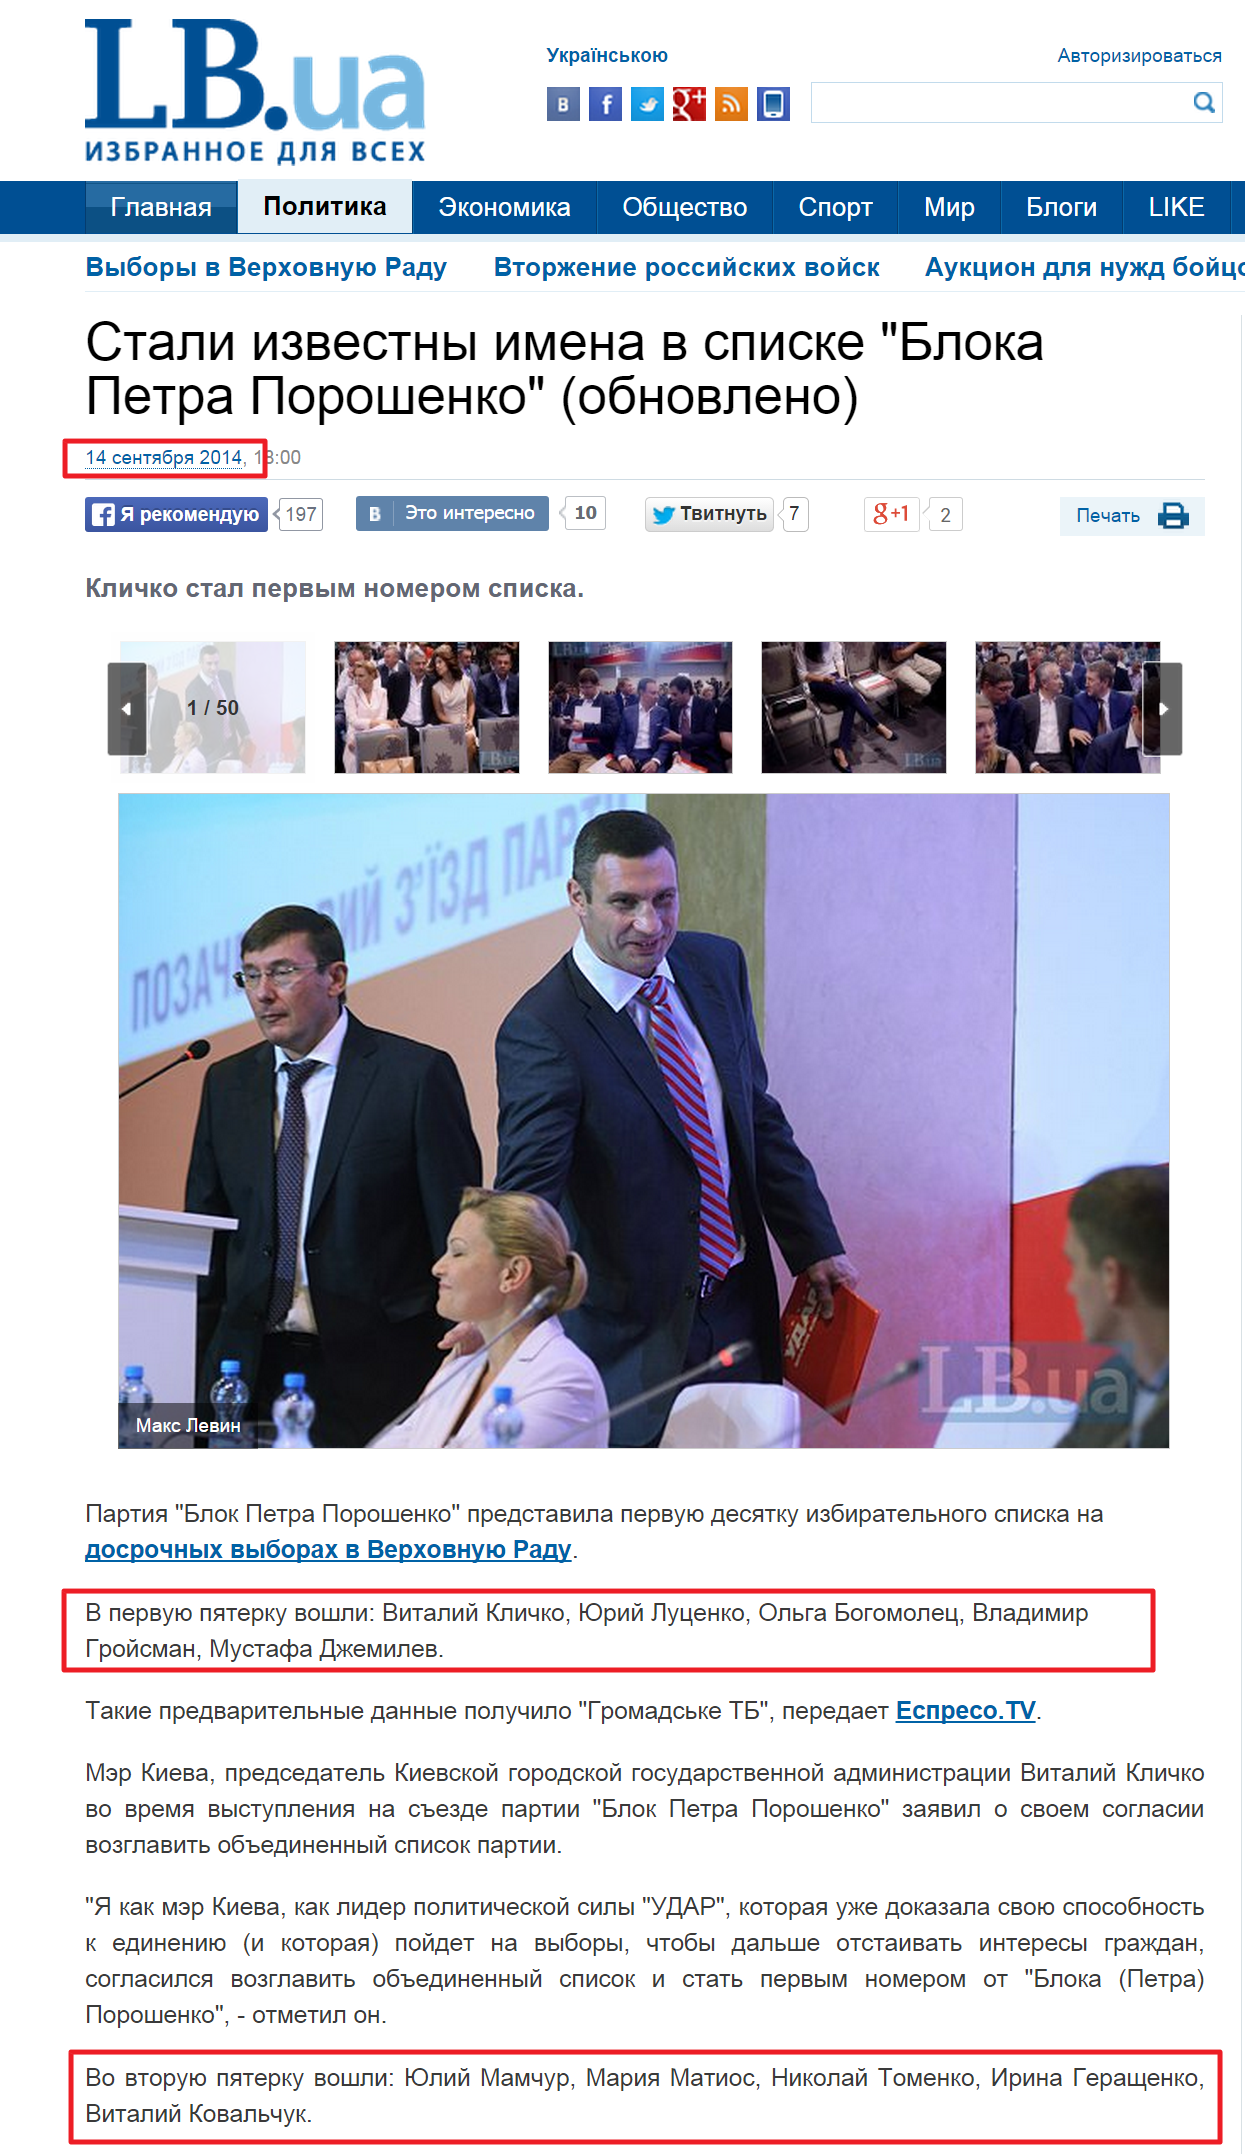 http://lb.ua/news/2014/09/14/279318_stala_izvestna_pervaya_desyatka_spiska.html